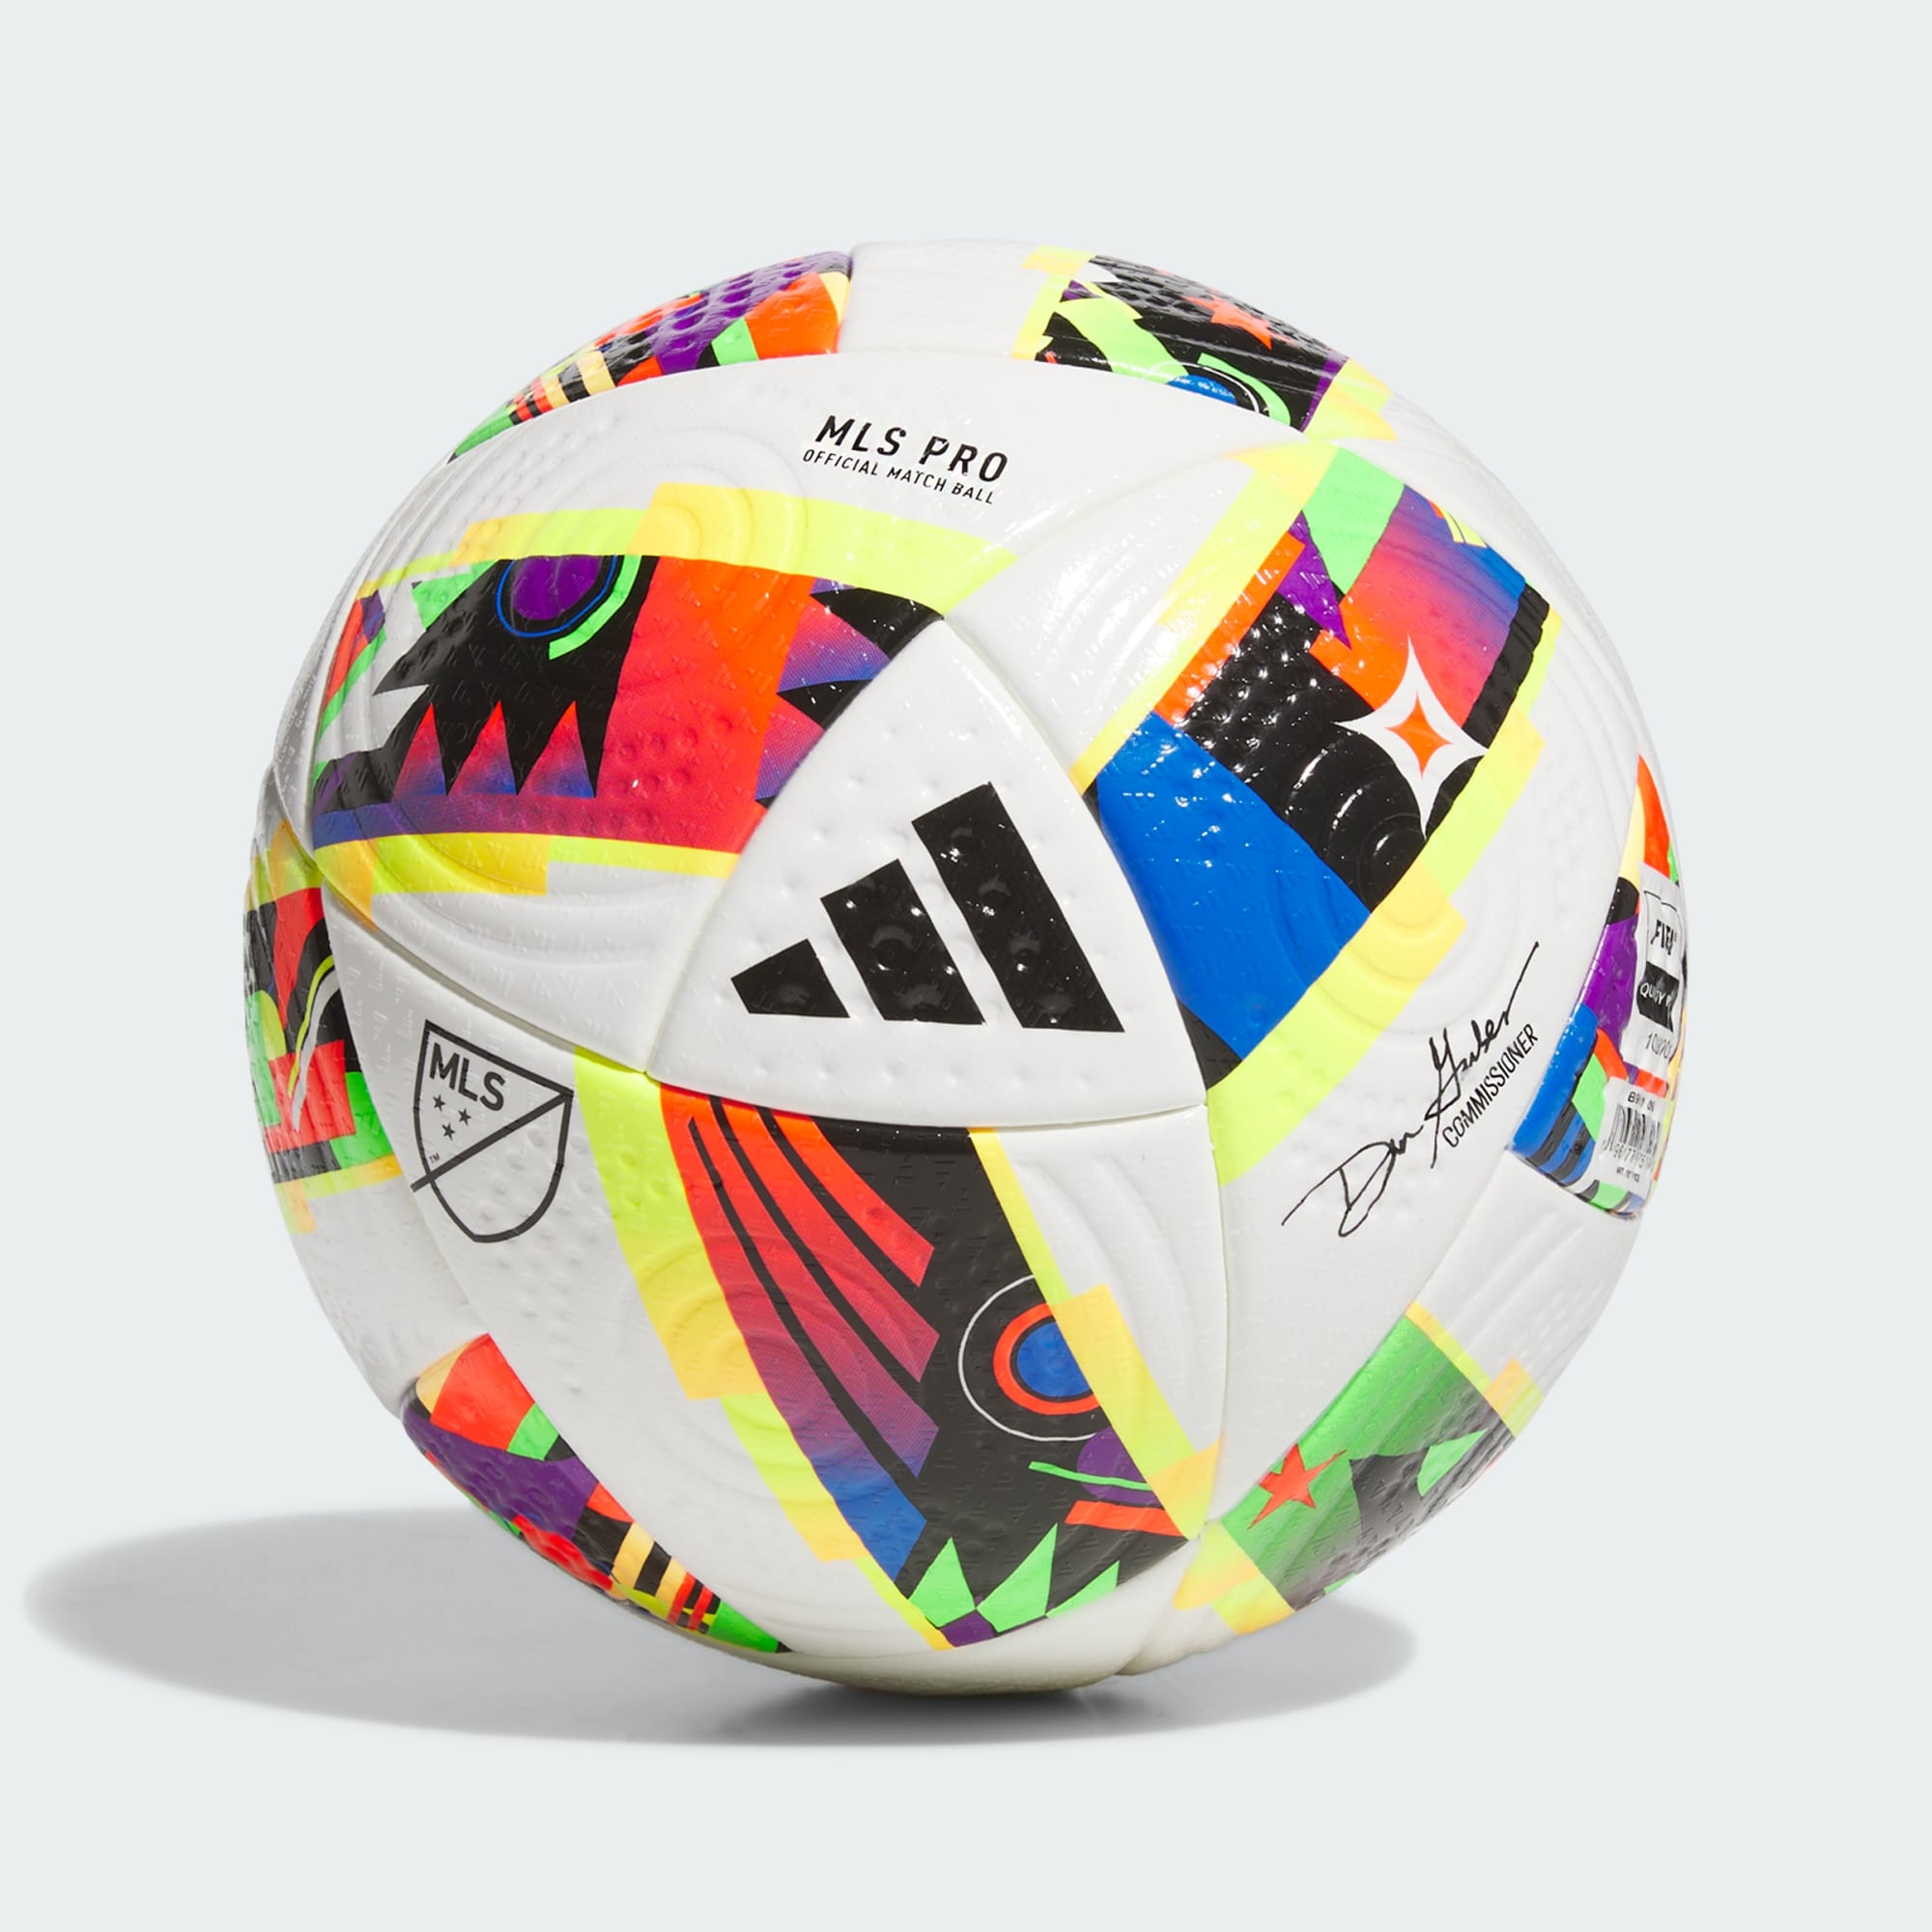 adidas MLS Pro 24 Soccer Ball